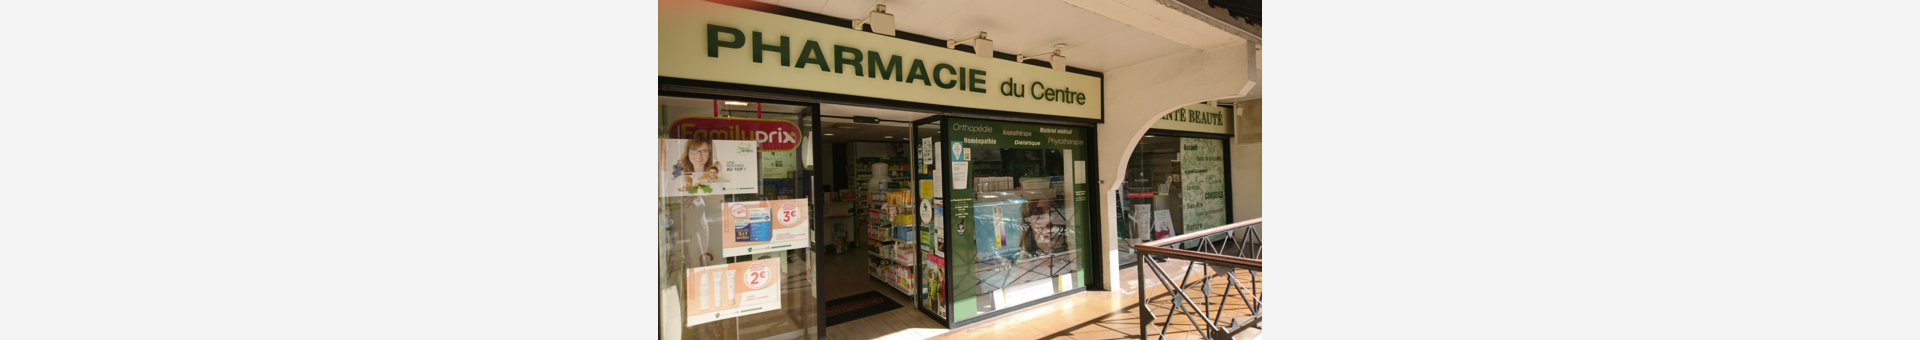 pharmacie du centre ccial de Jouy en Josas au centre ville